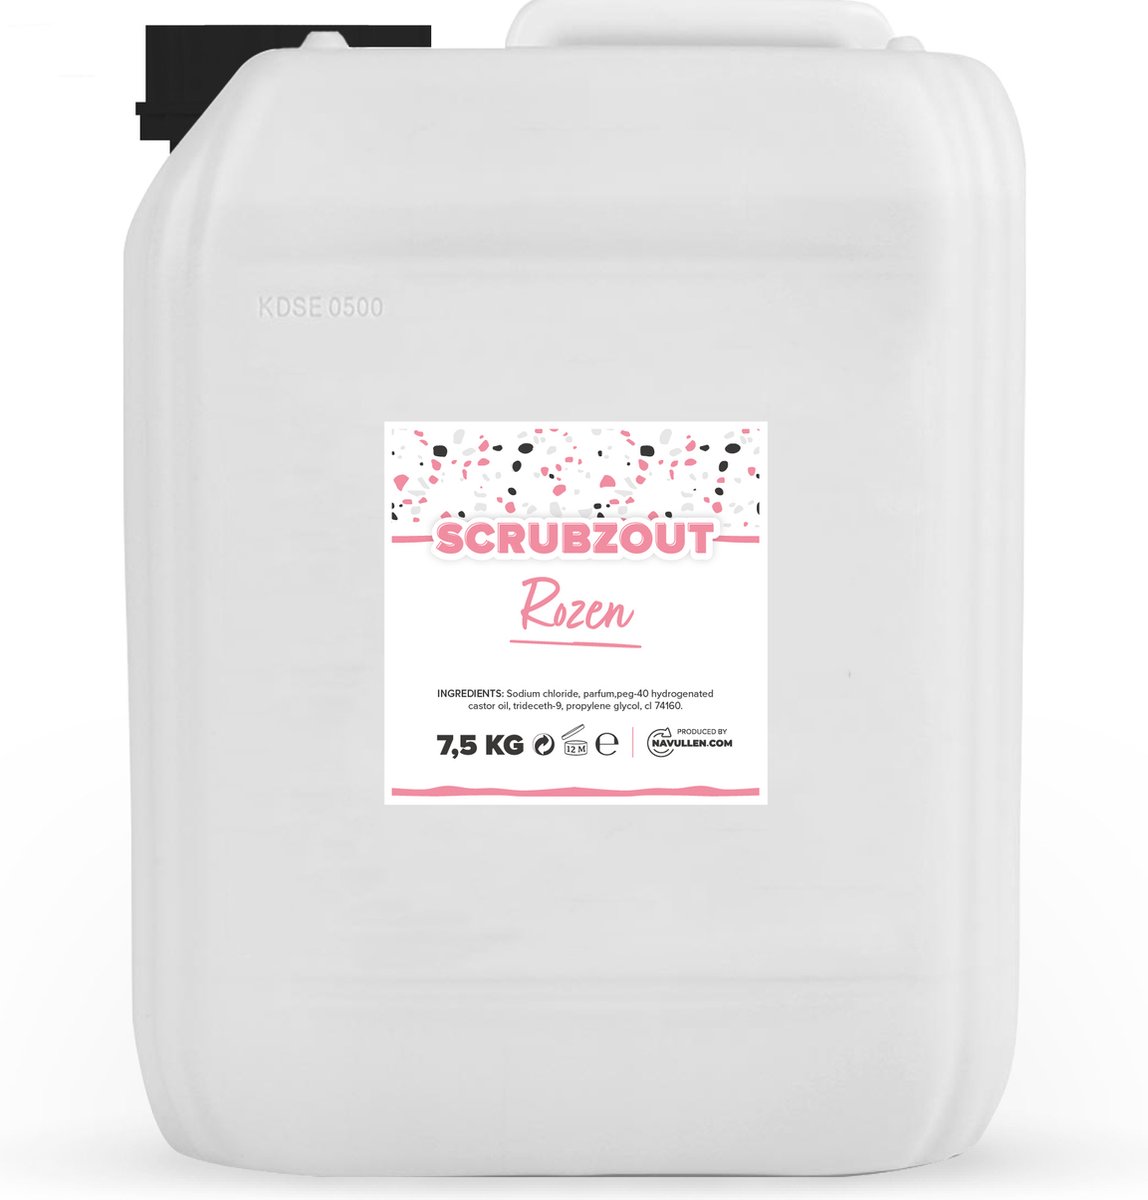 Scrubzout - Rozen - 7,5 KG Jerrycan